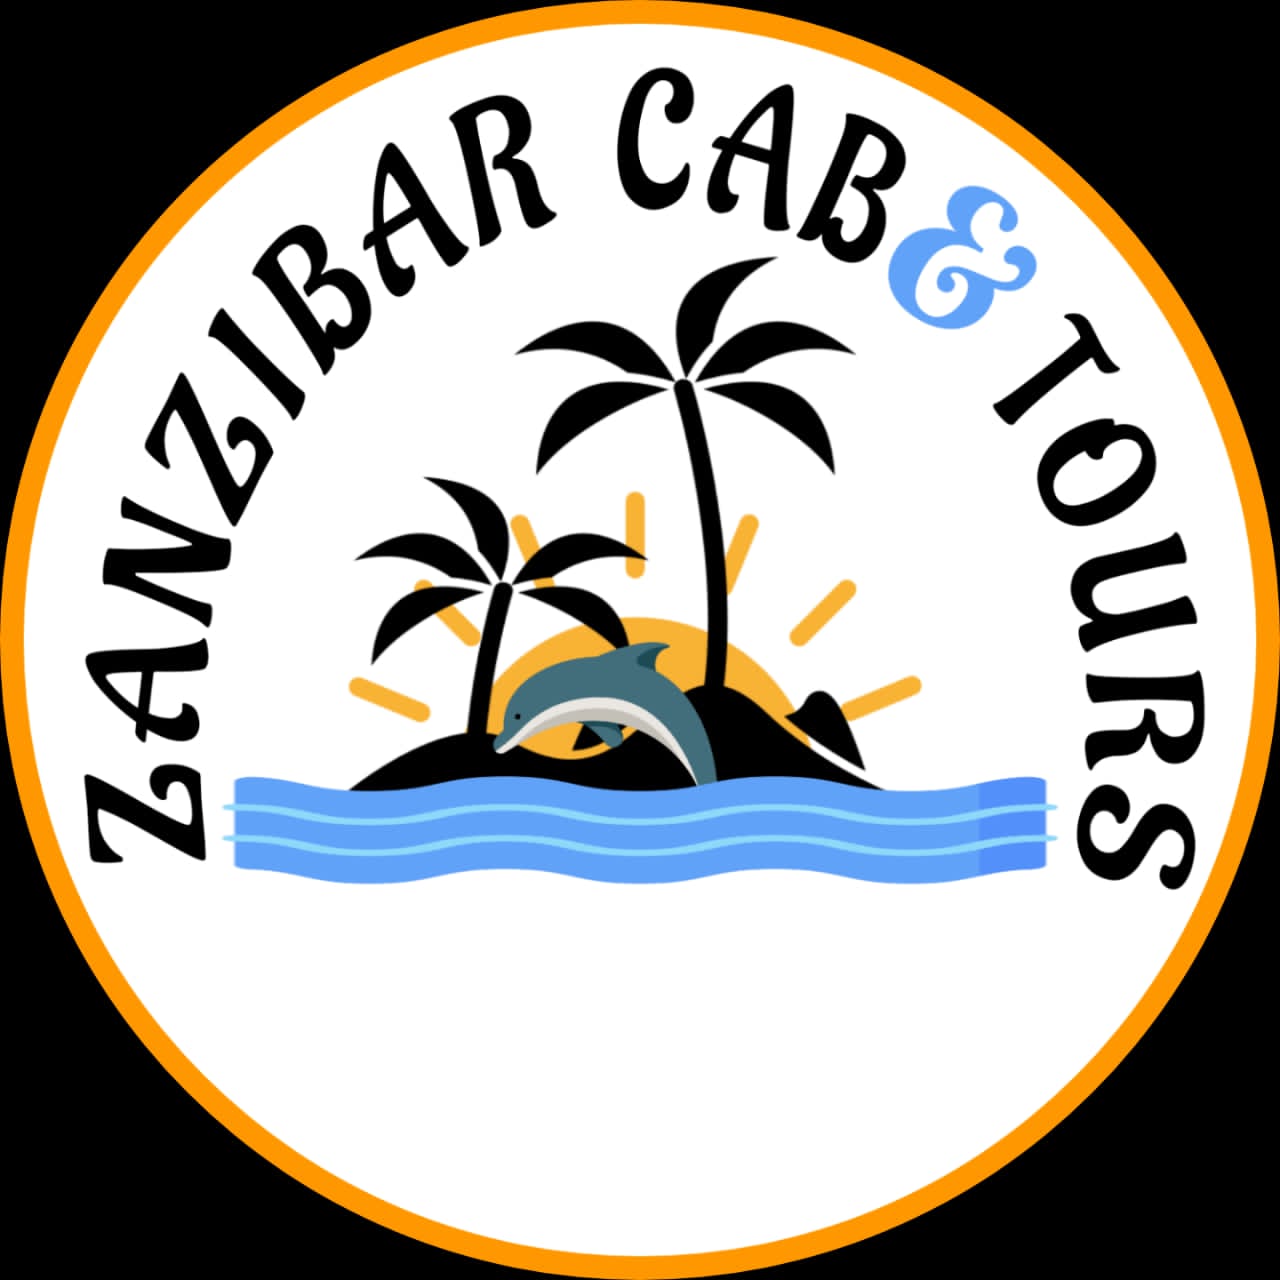 Zanzibar Cab